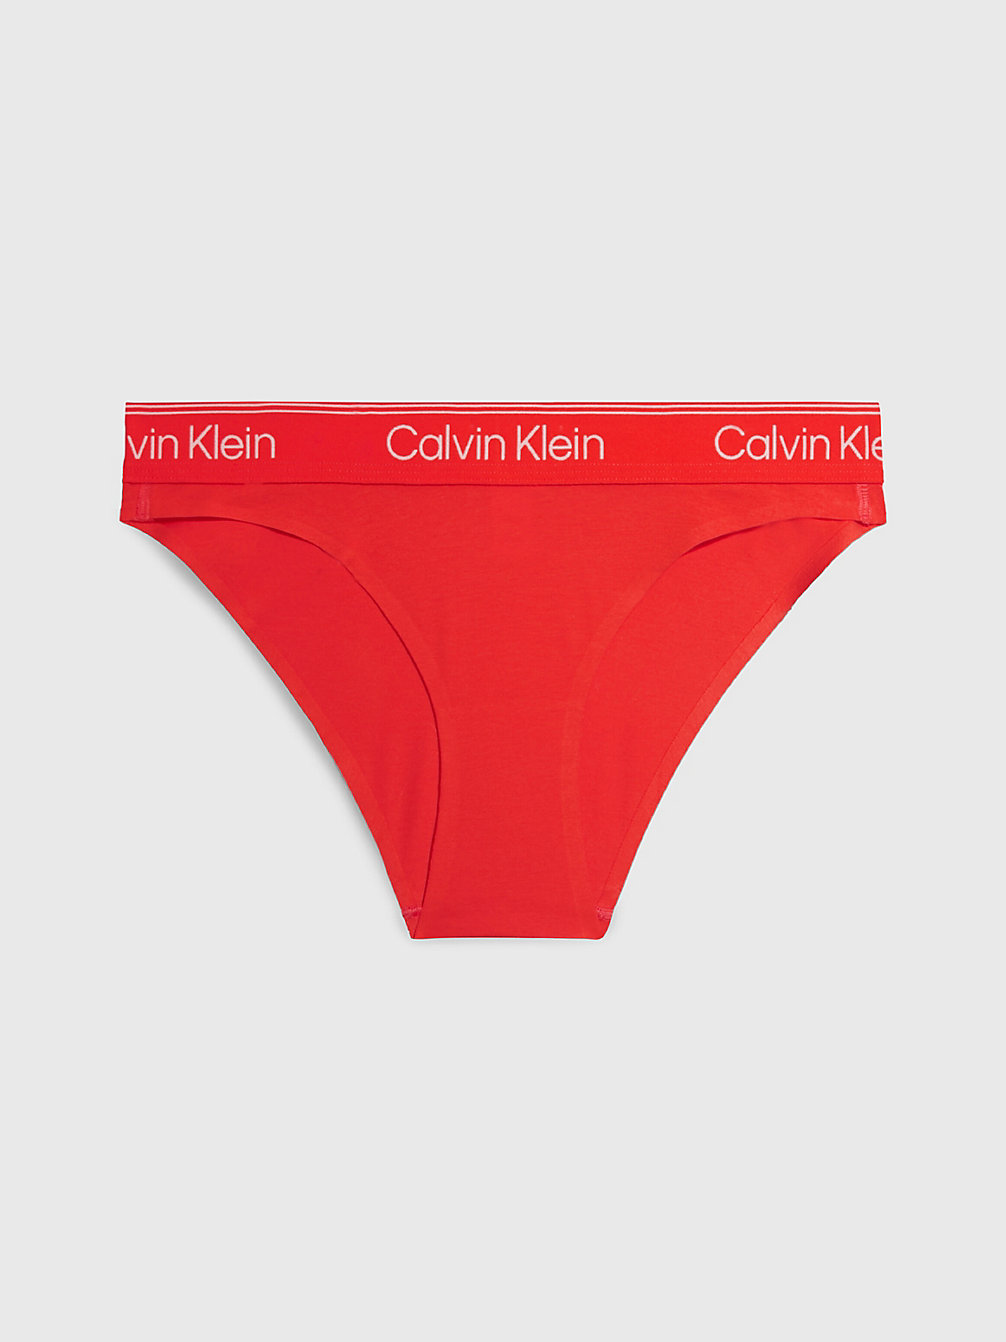 HAZARD > Majtki Tanga - Athletic Cotton > undefined Kobiety - Calvin Klein